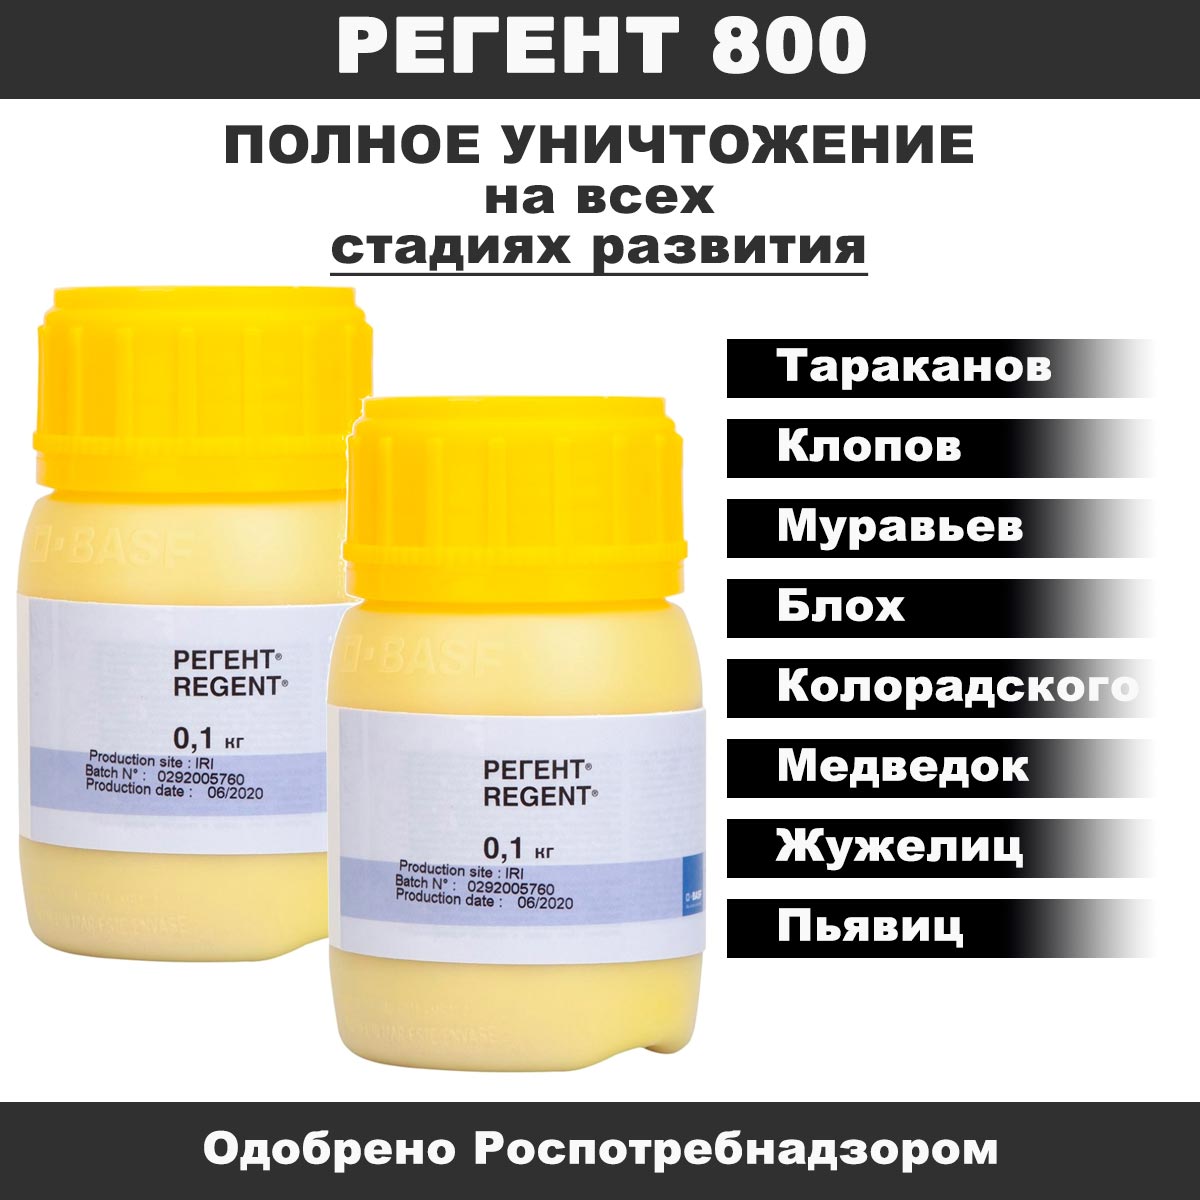 Применение препарата Регент 800